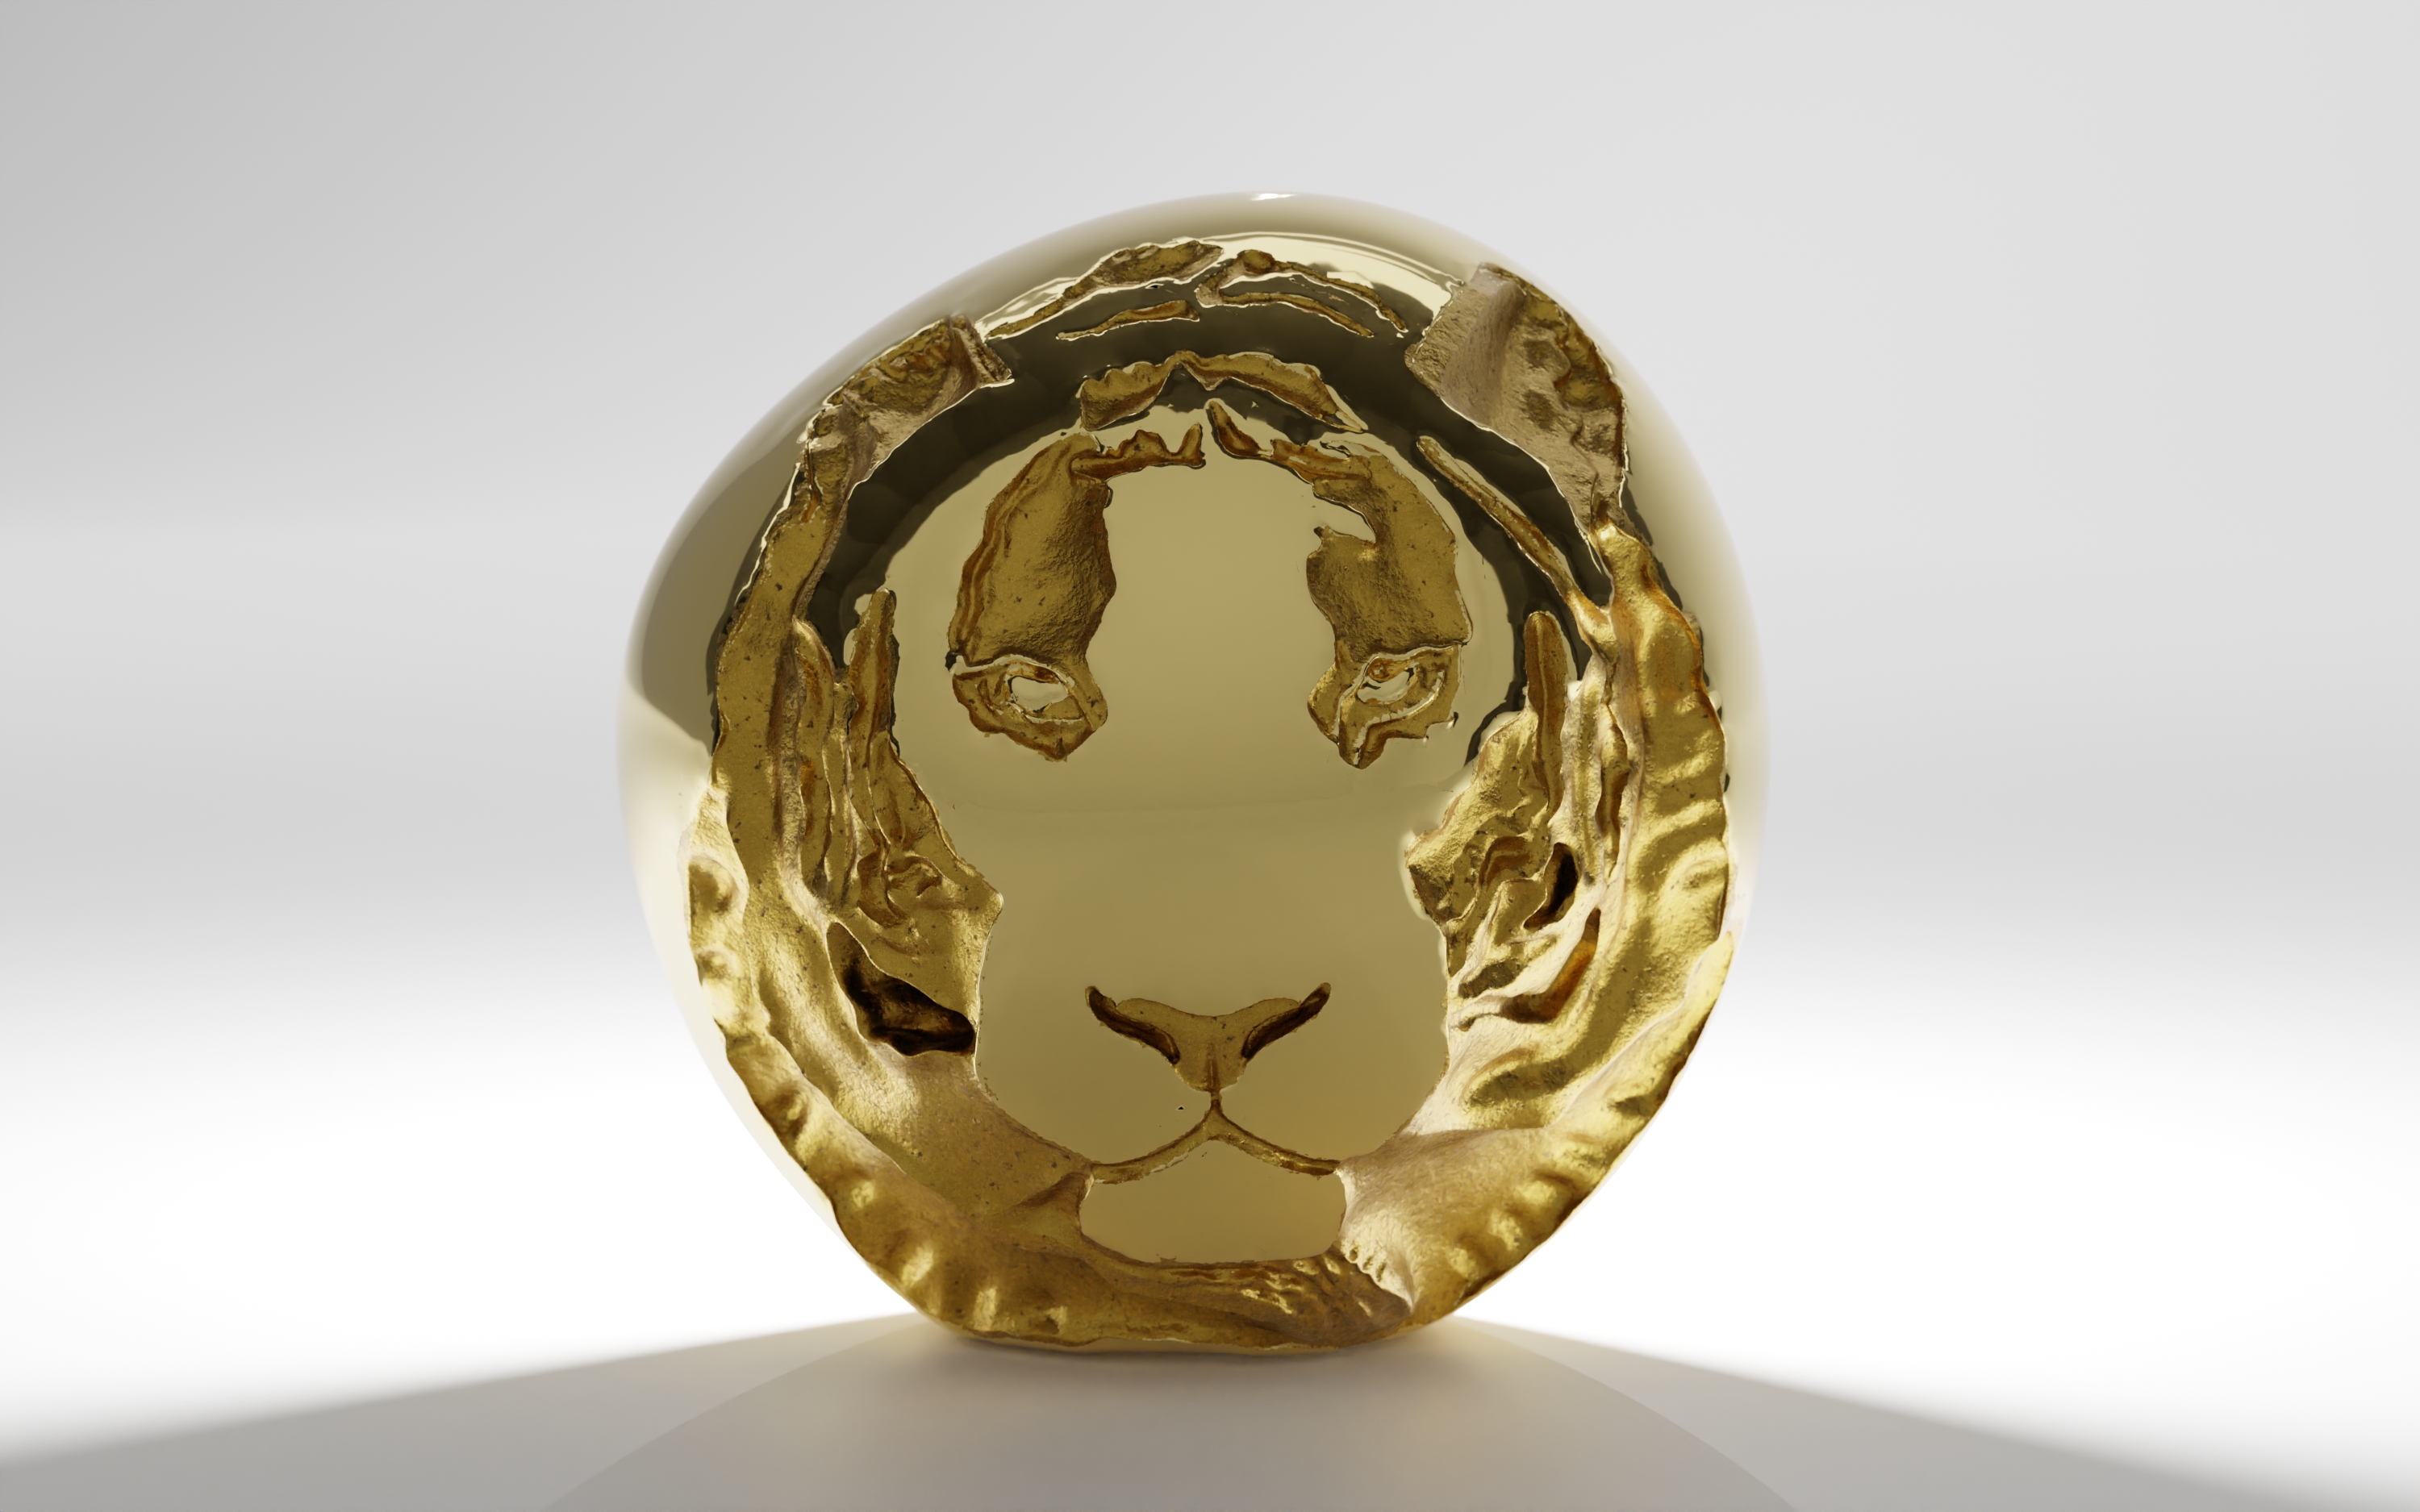 tiger brass made home décor - Shazé